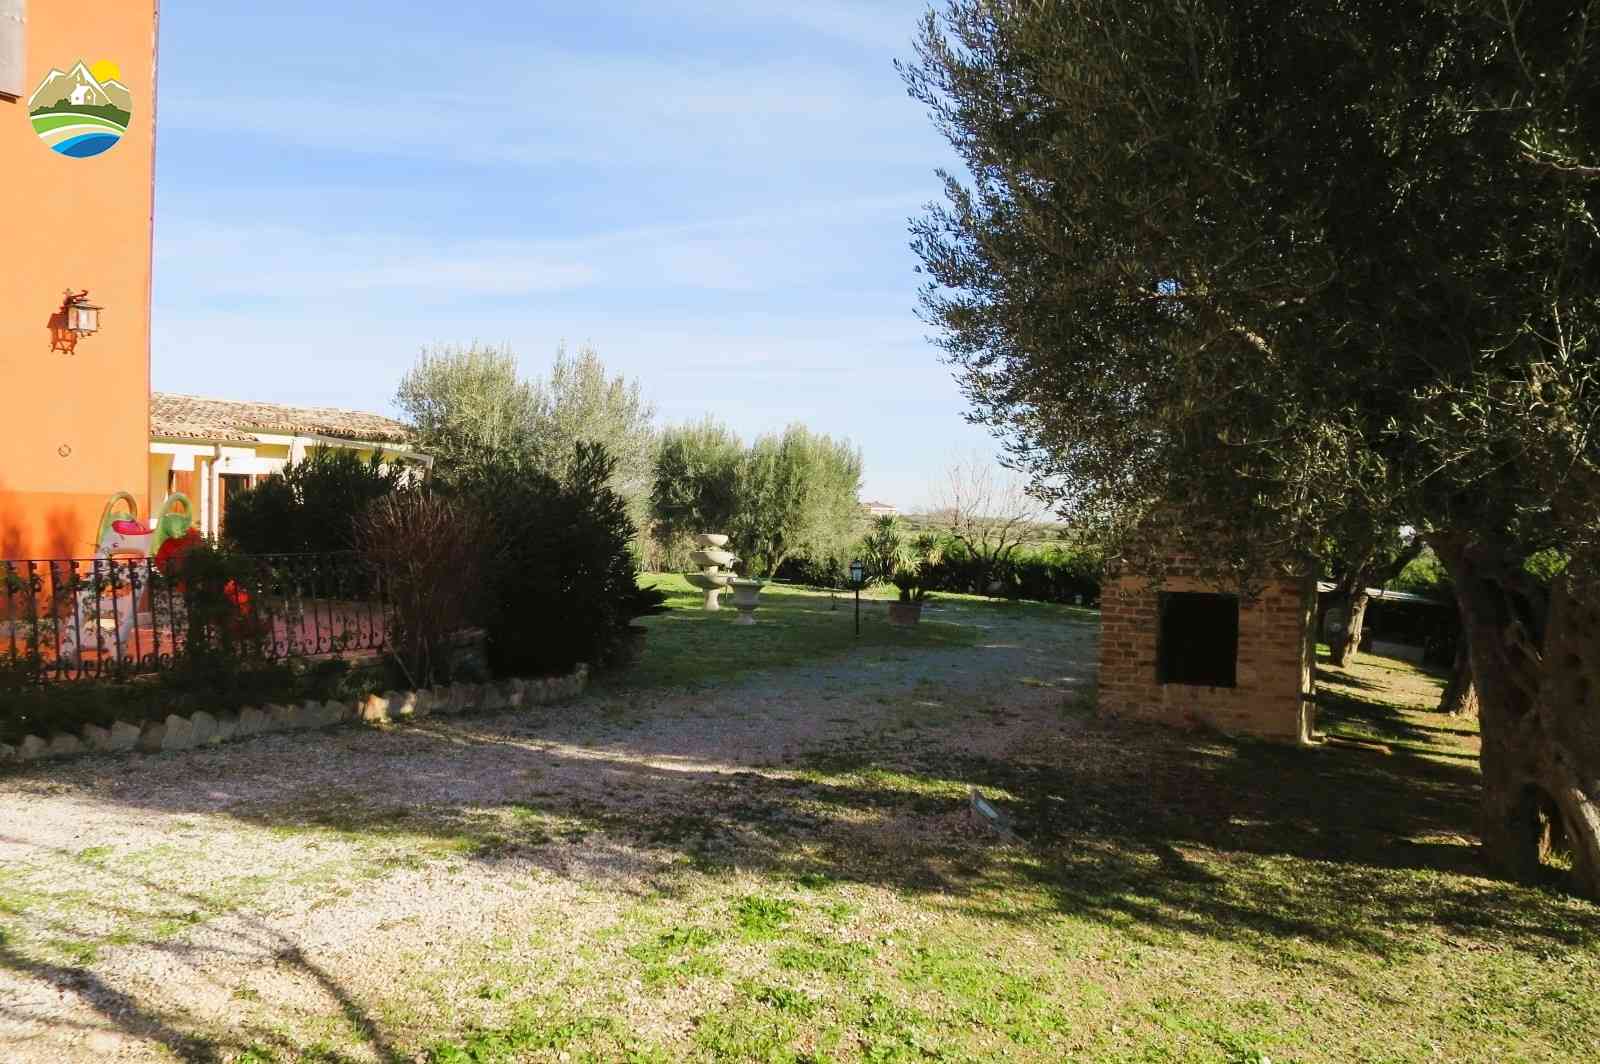 Country Houses Country Houses for sale Bellante (TE), Casale La Vignola - Bellante - EUR 524.401 930